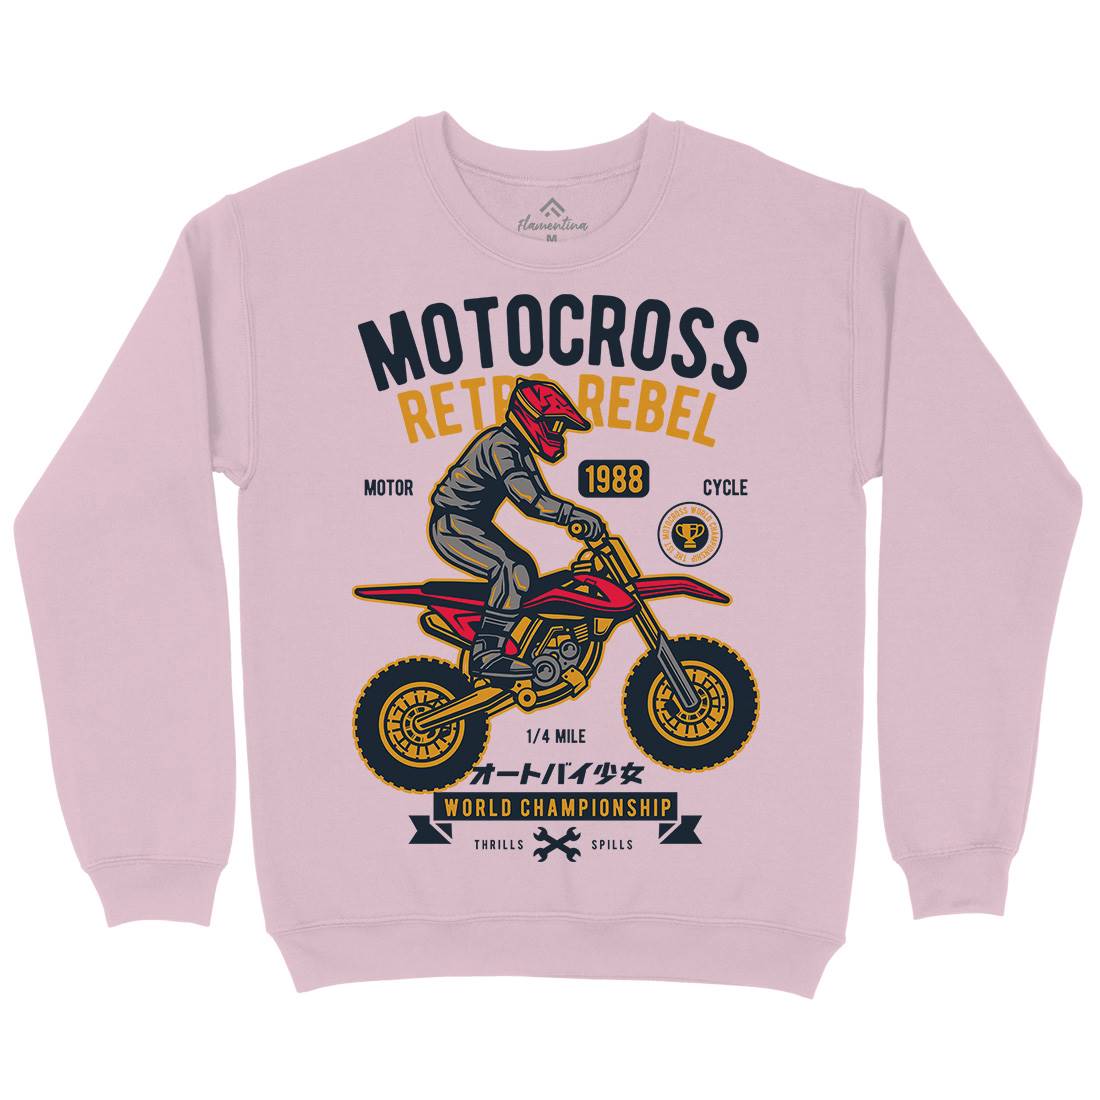 Motocross Retro Rebel Kids Crew Neck Sweatshirt Motorcycles D553